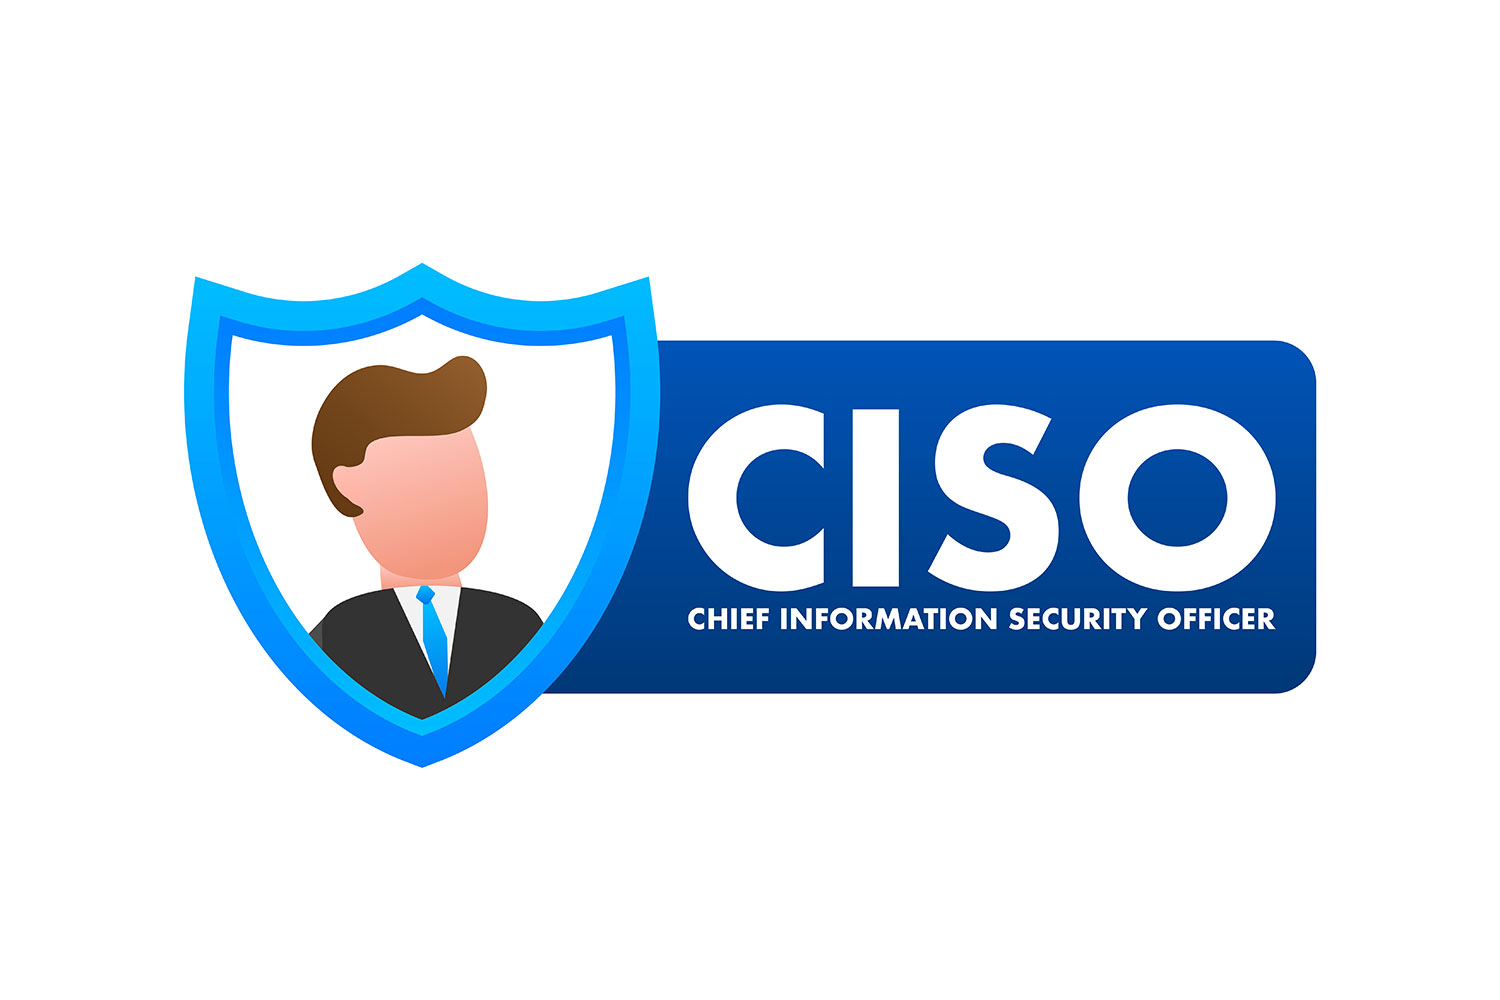 dibujo de un hombre dentro de un escudo y la leyenda CISO: CHIEF INFORMATION SECURITY OFFICER